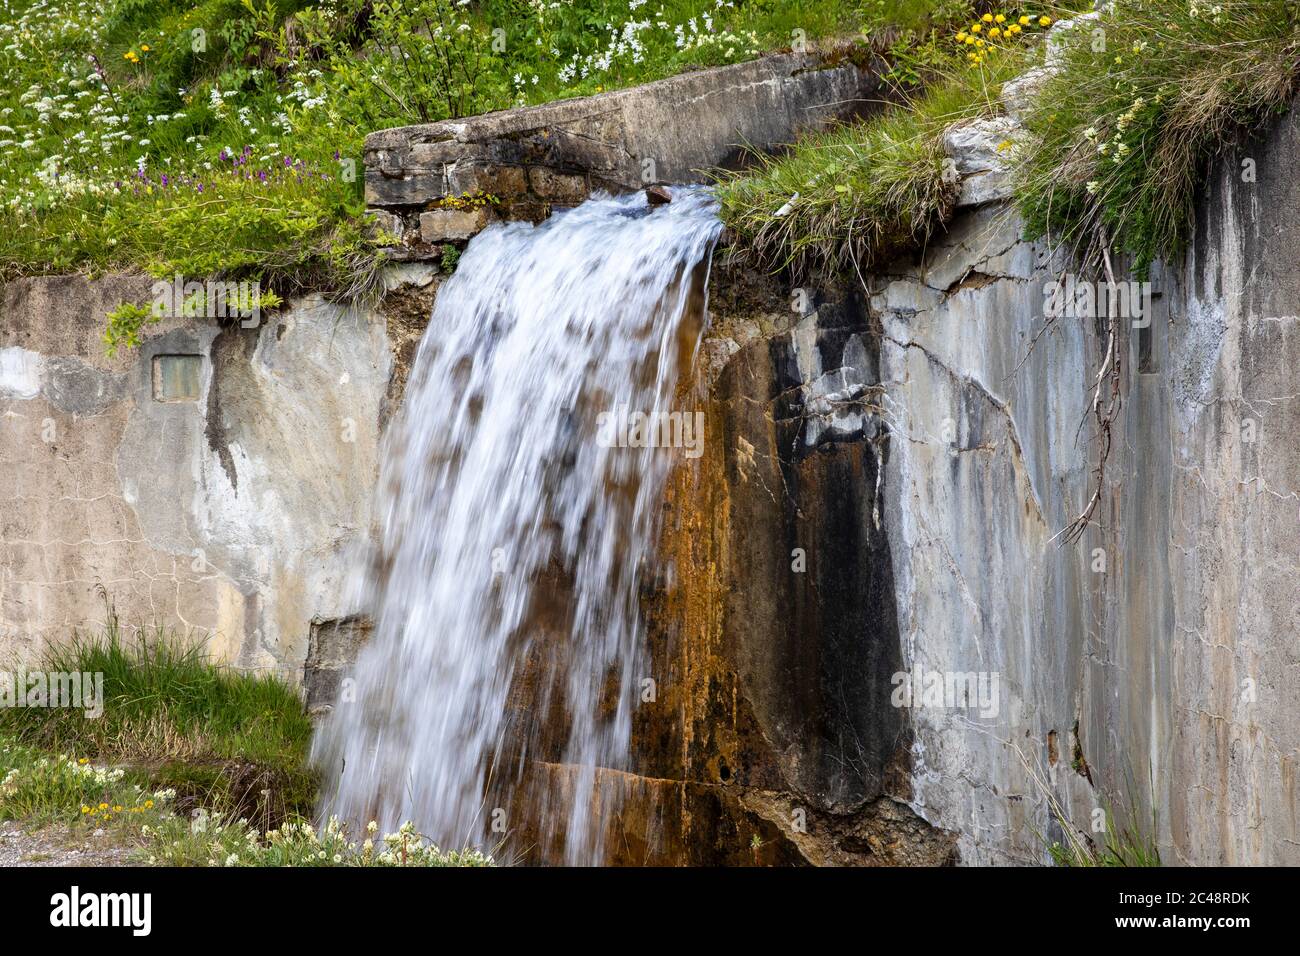 A waterfall, Morasco Lake, Formazza Valley, Ossola Valley, VCO, Piedmont, Italy Stock Photo